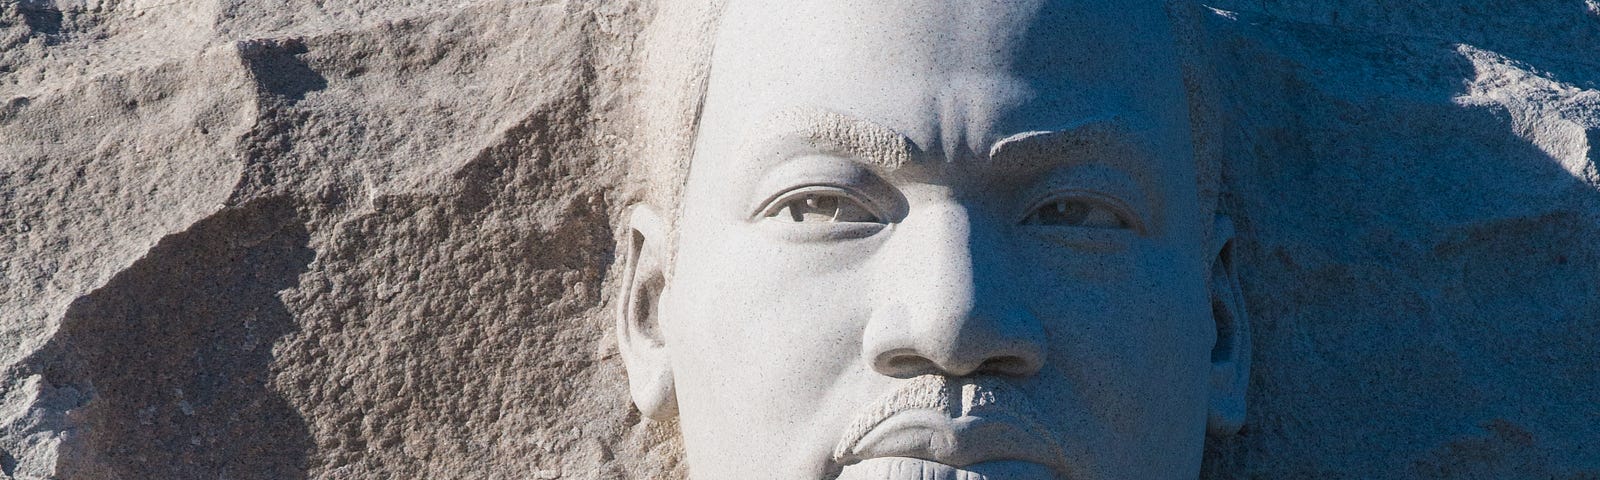 MLK Memorial in Washington DC — For more info go here: https://www.nps.gov/mlkm/index.htm